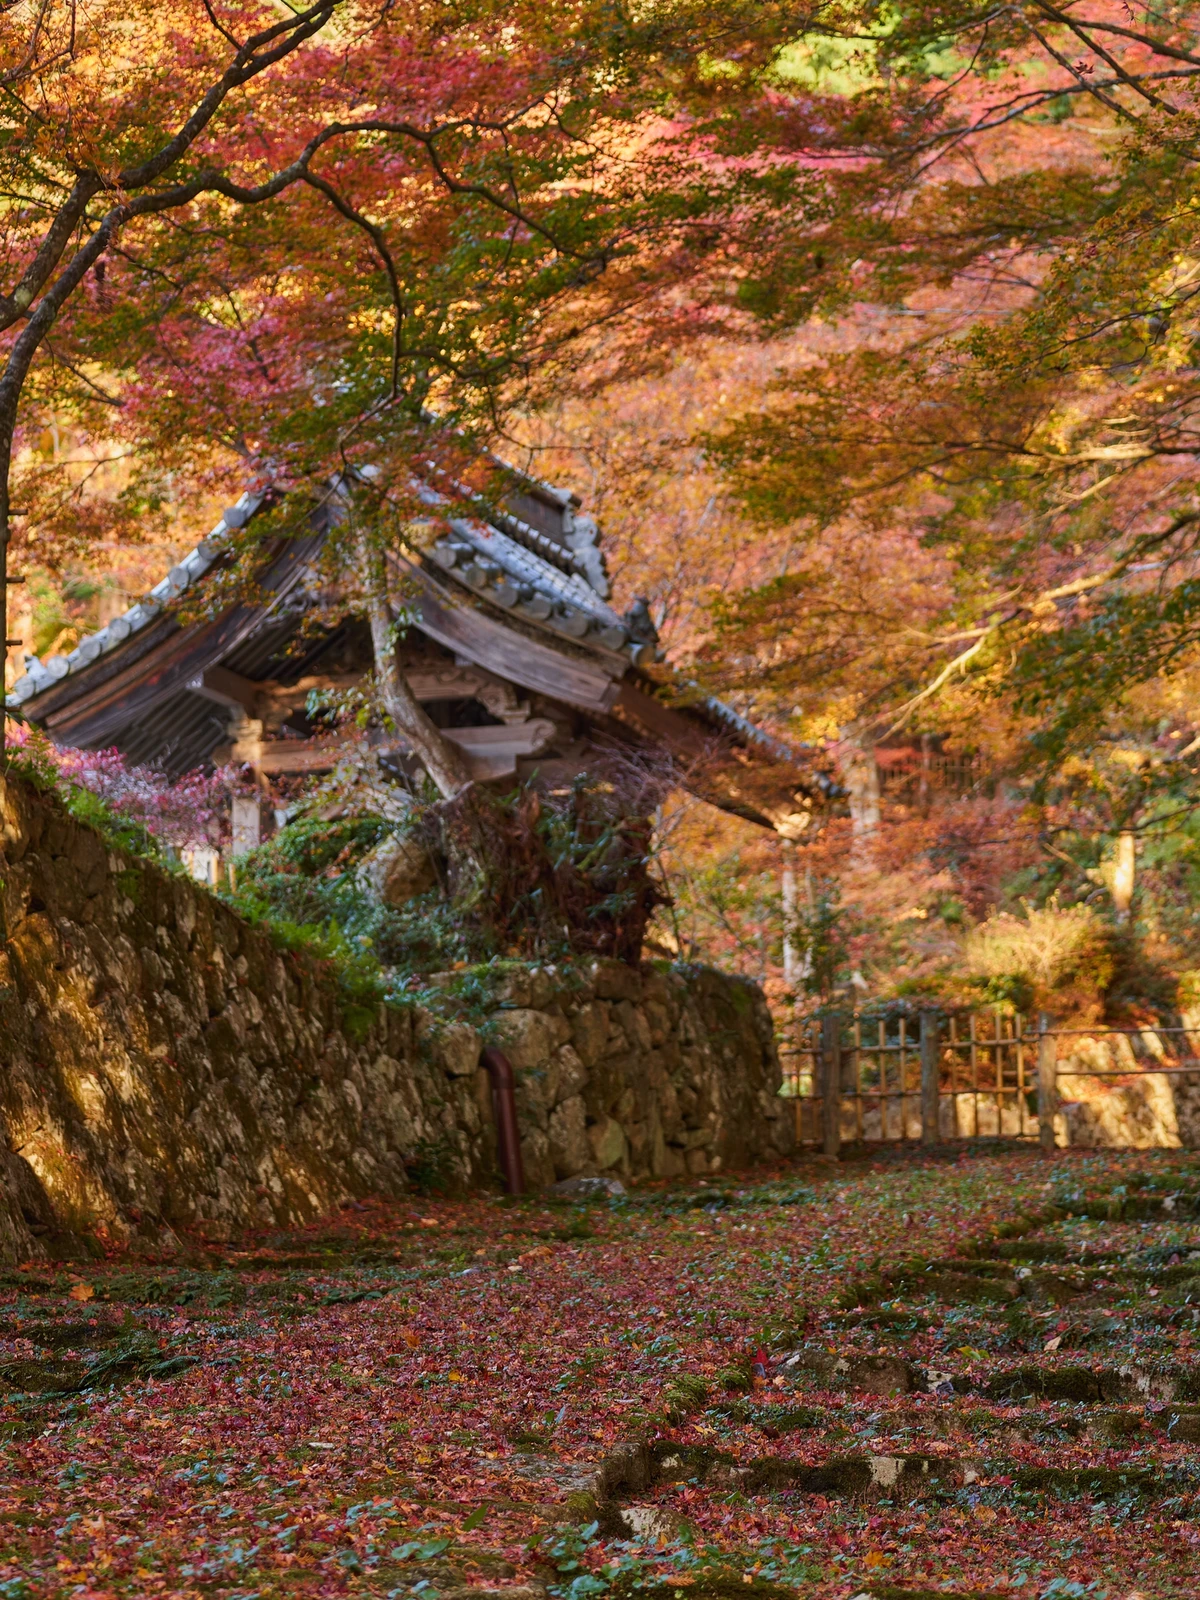 敷き紅葉と苔の参道が美しい 湖東三山 百済寺 Genかなが投稿したフォトブック Lemon8